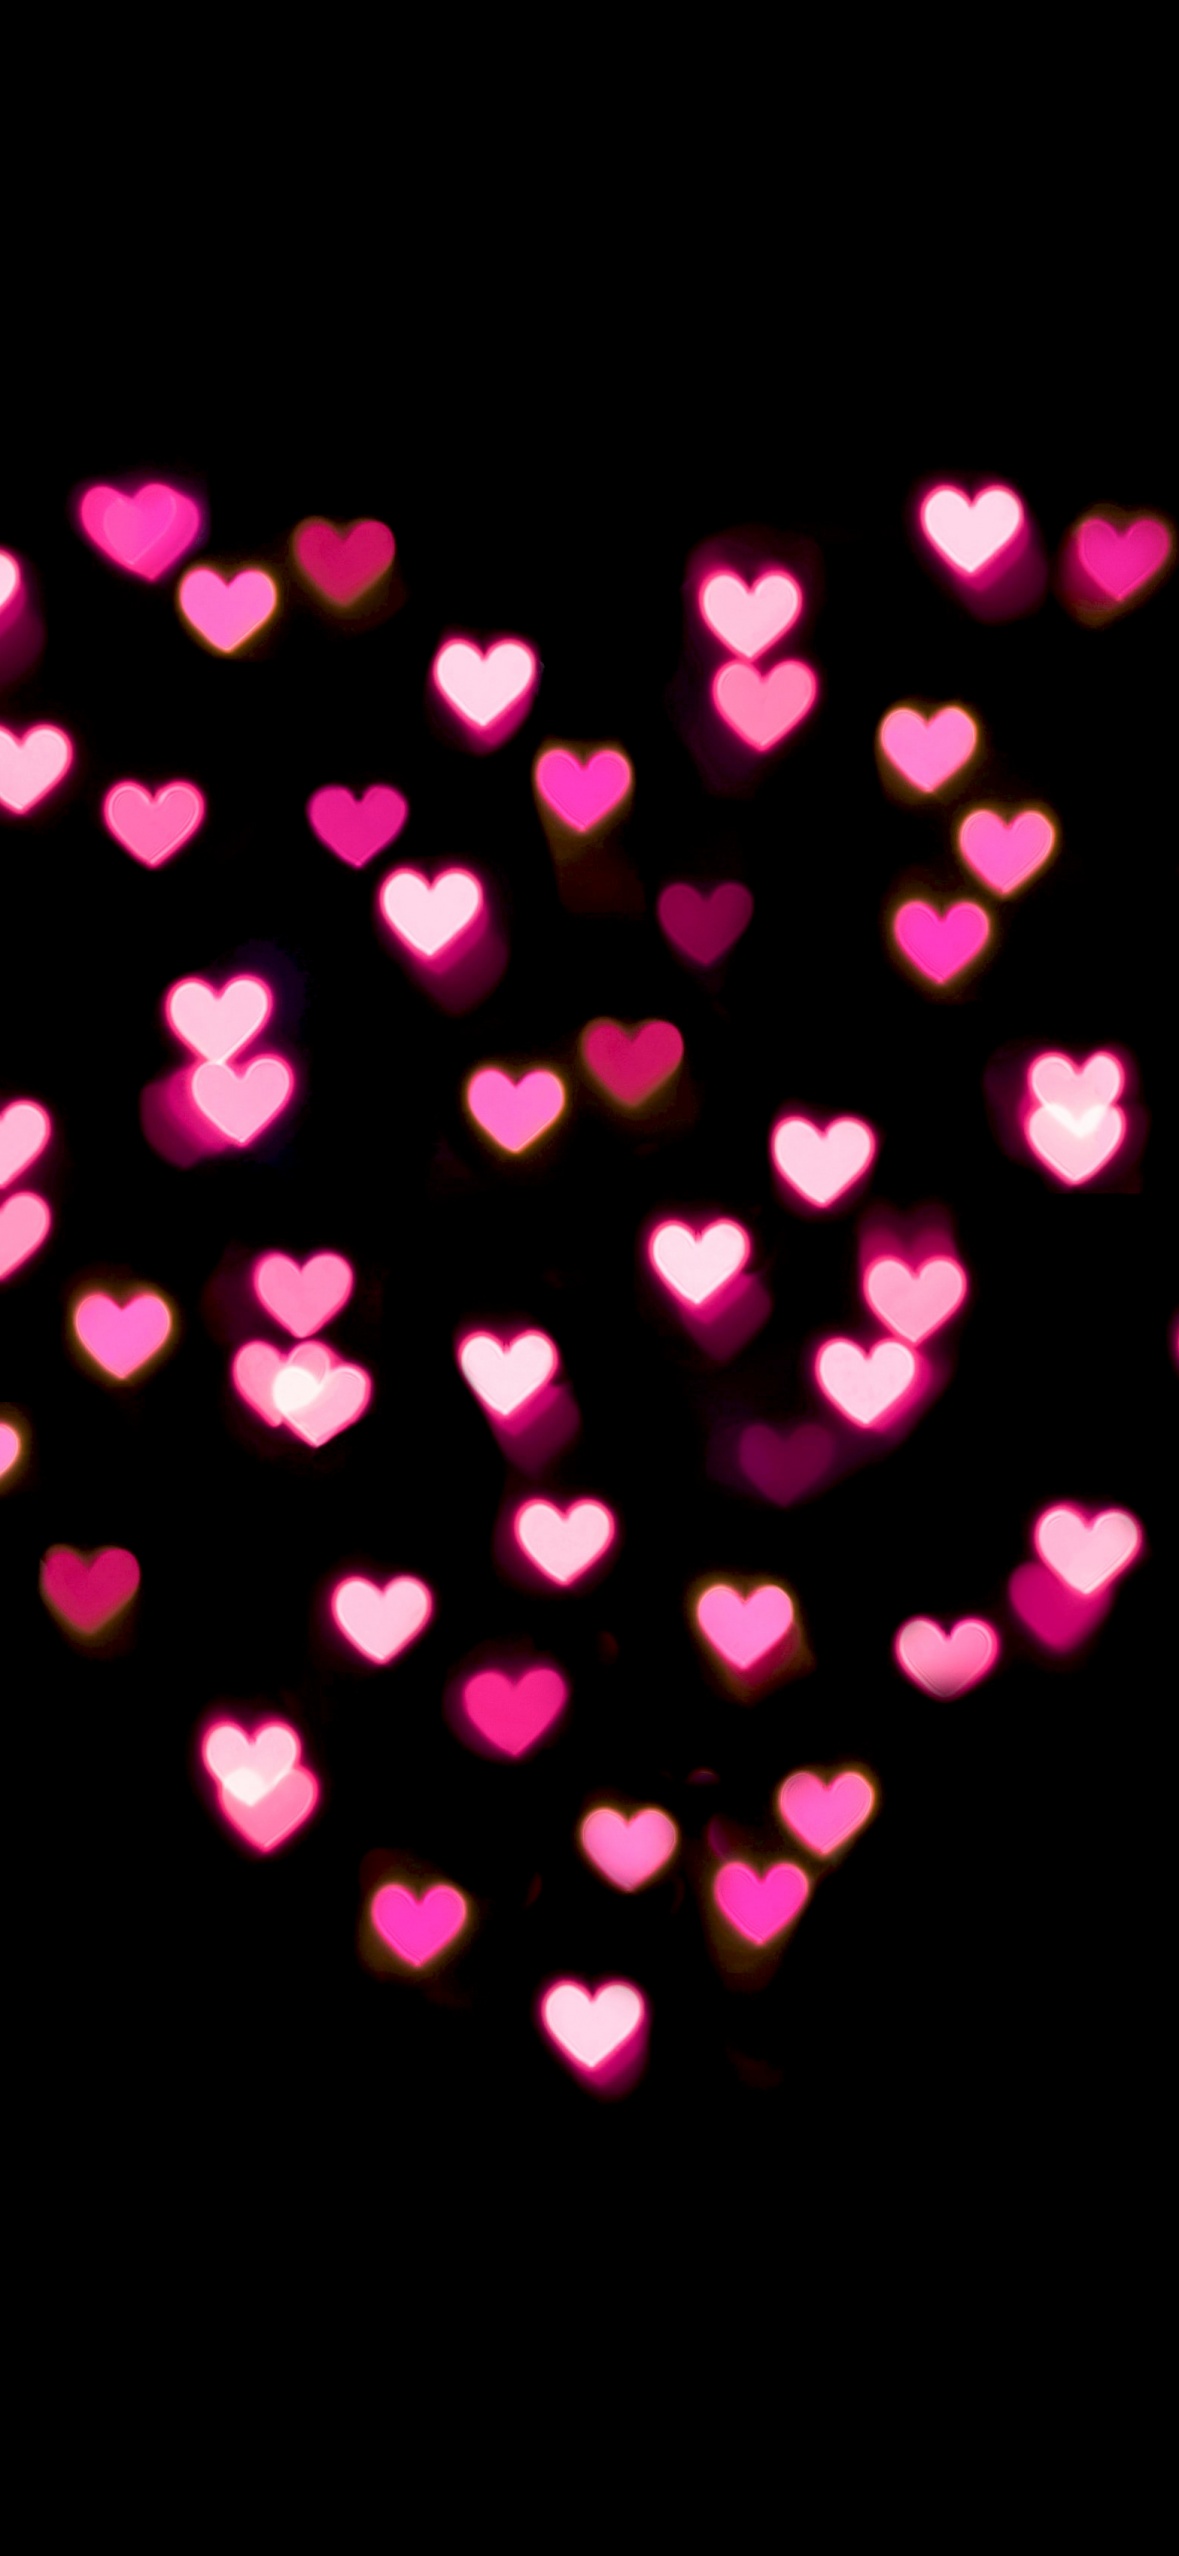 Love heart Wallpaper 4K, Pink hearts, Lights, Night